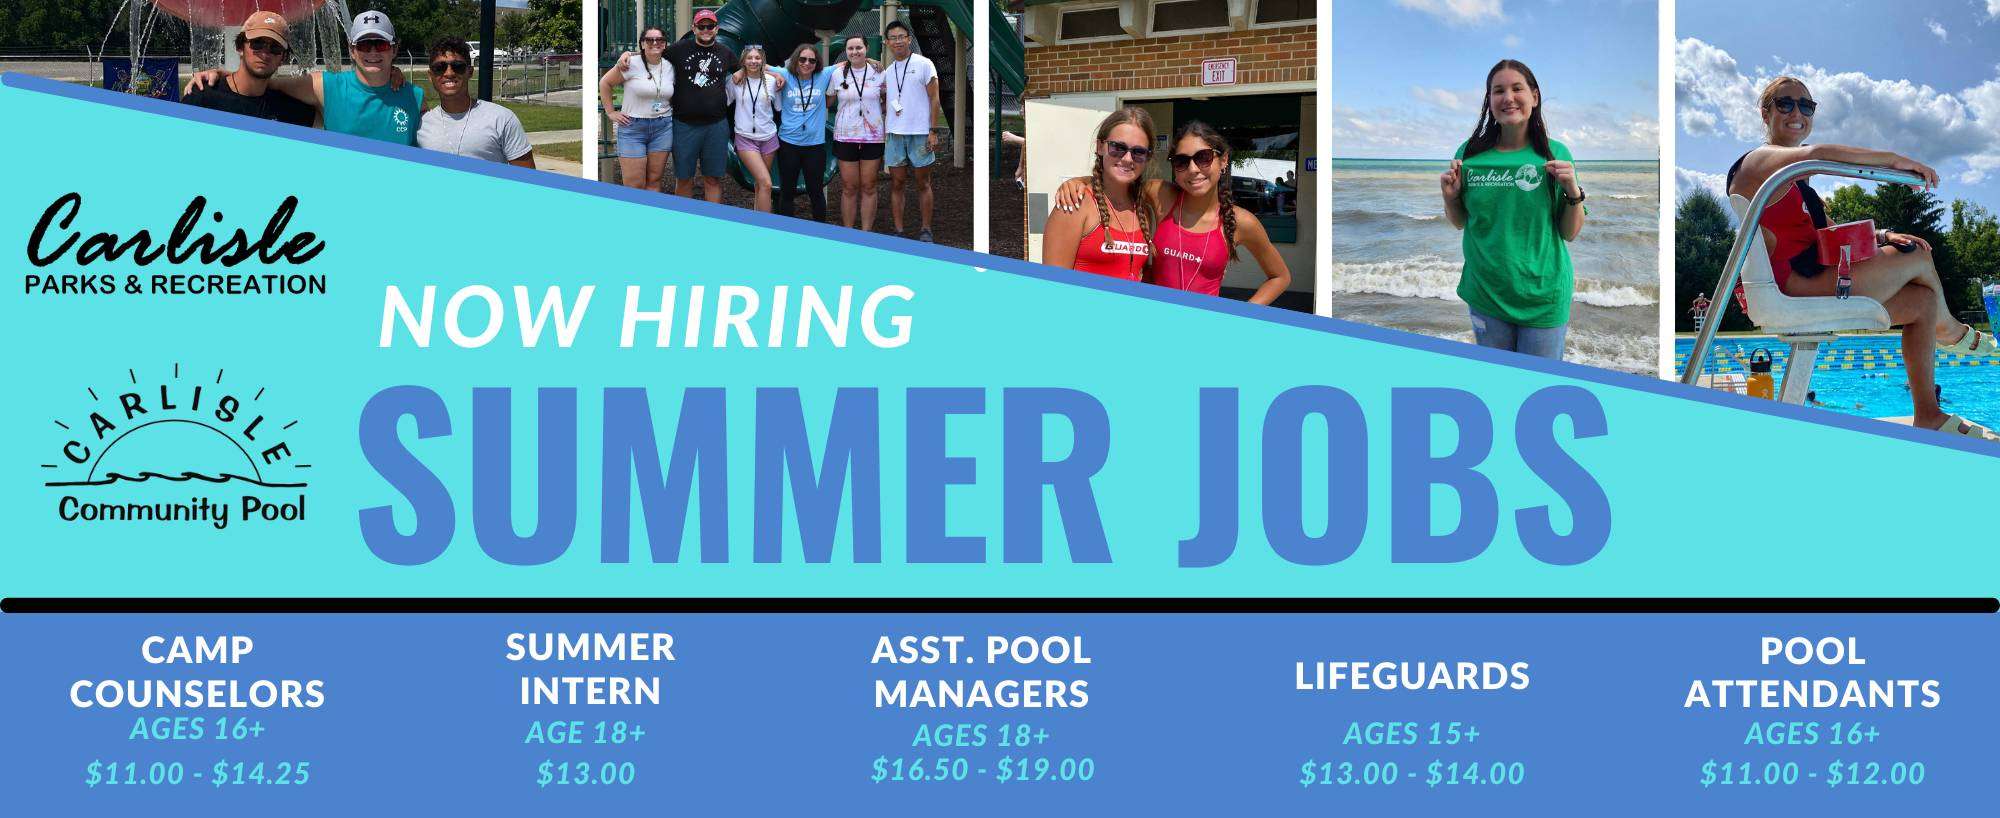 Brochure - Summer Jobs - Copy - Copy